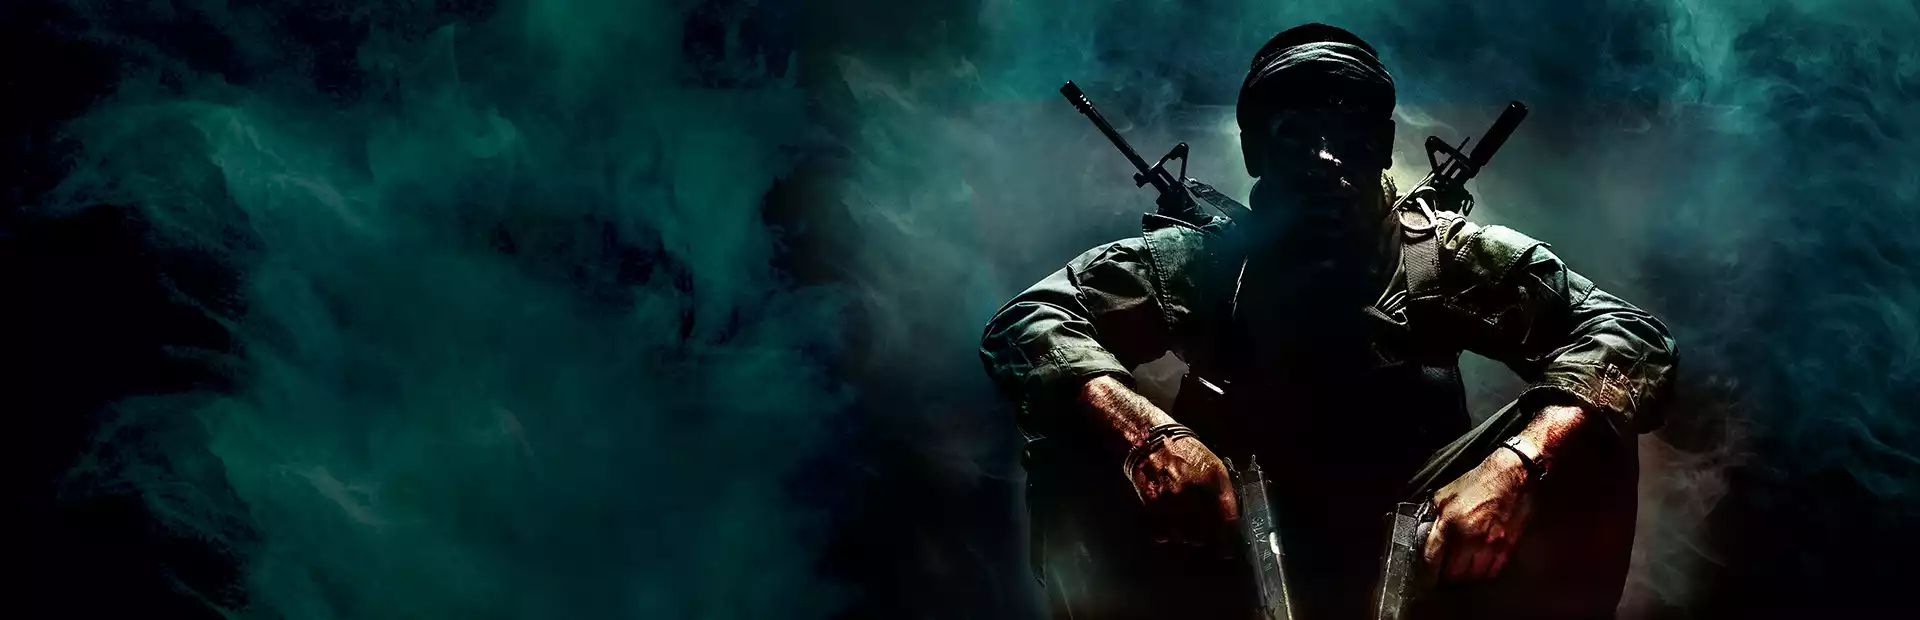 Call of Duty: Black Ops Steam Key GLOBAL